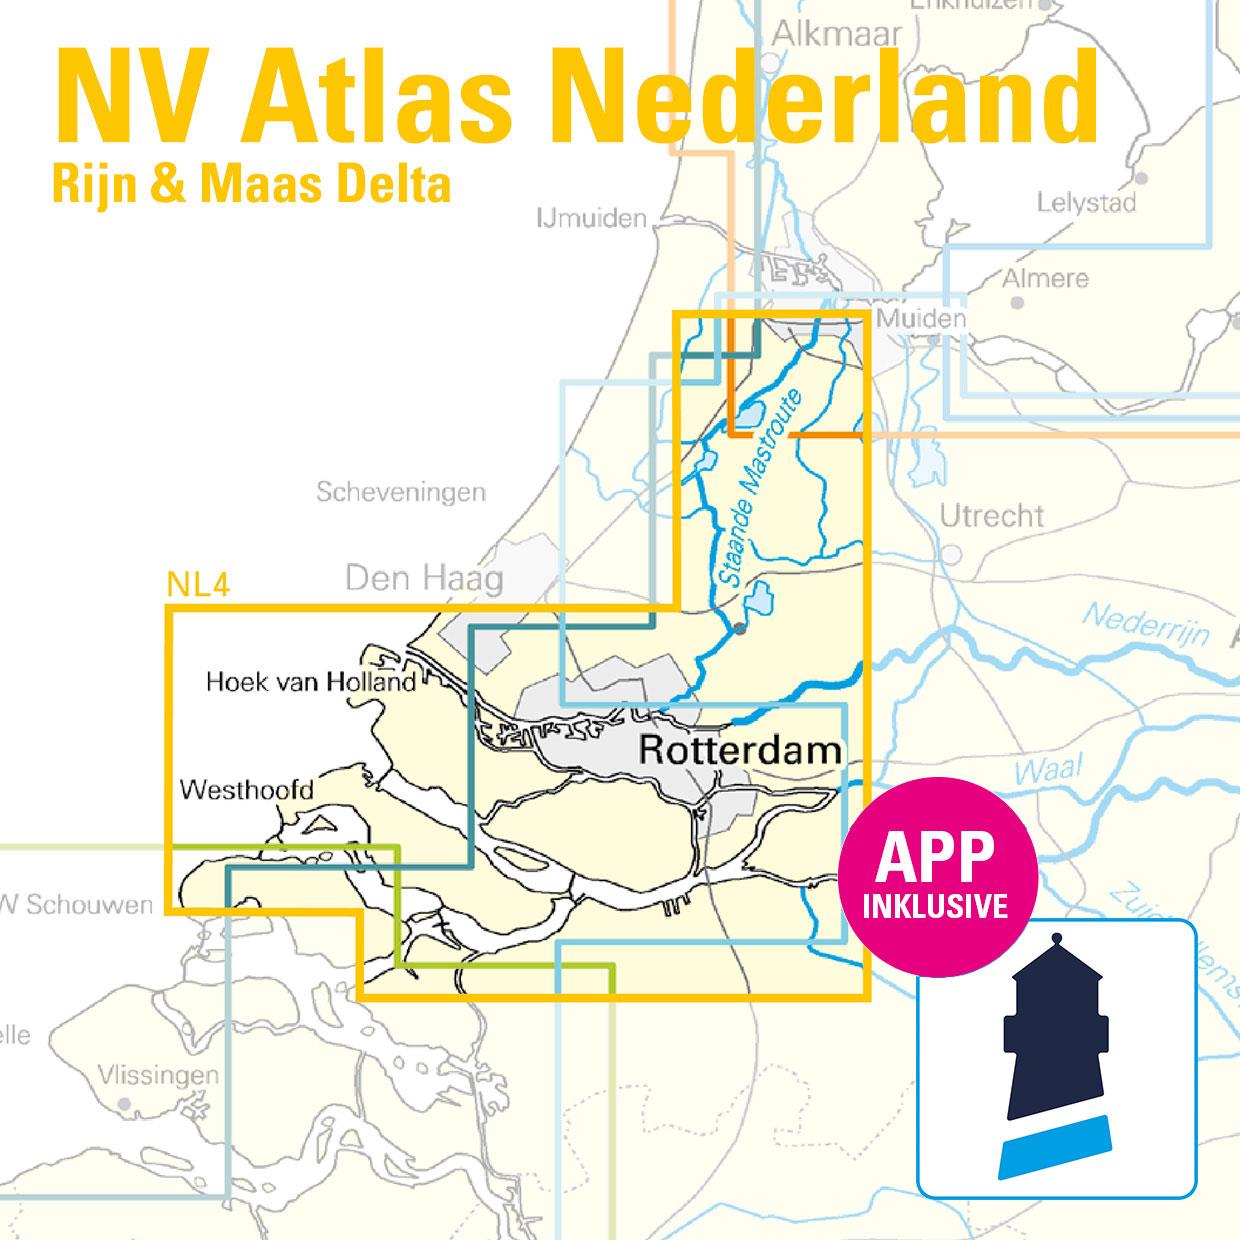 NV Charts Nederland NL4 - Rijn en Maas Delta